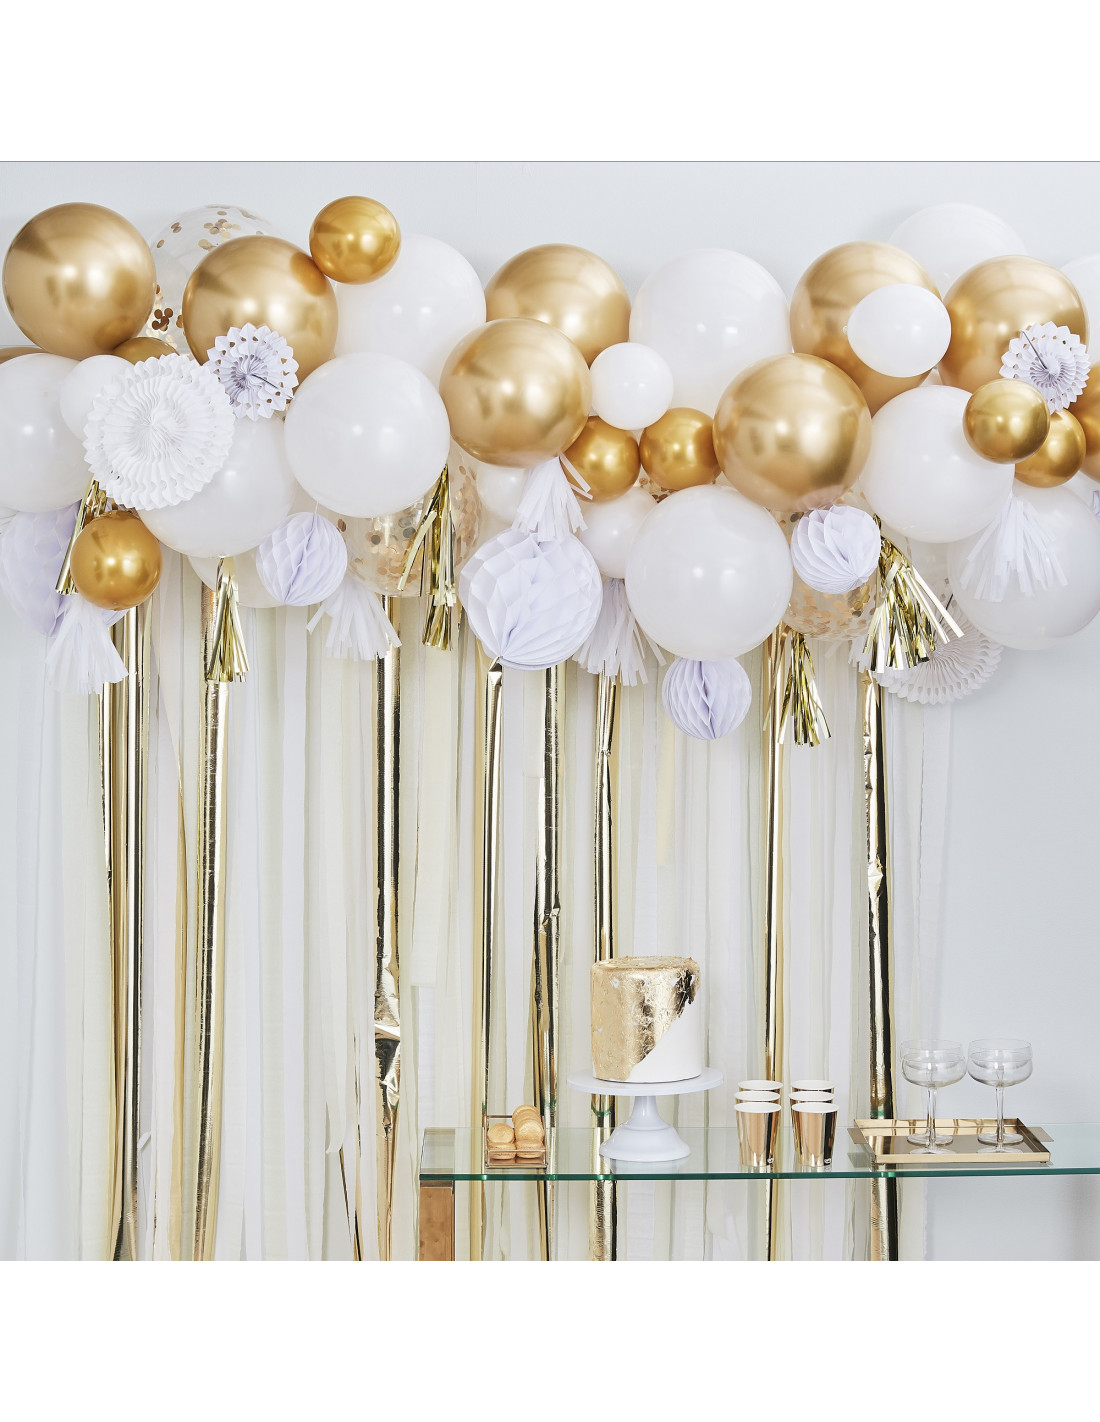 Réaliser une grappe de ballons doré et blanc pour anniversaire et fête